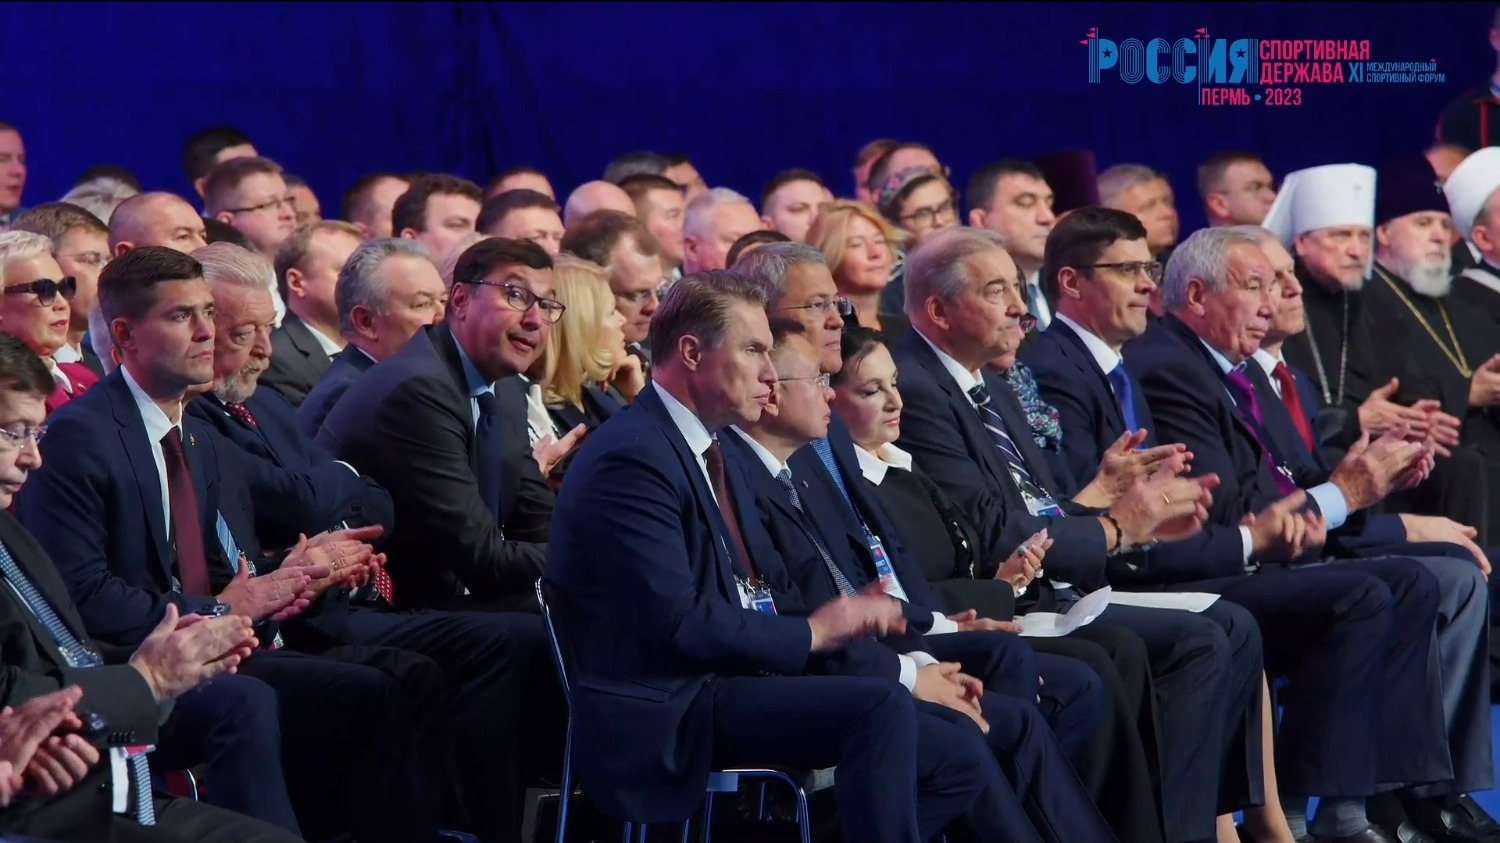 Владимир Путин пригласил спортсменов мира поучаствовать в форуме «Россия — спортивная держава» в Уфе